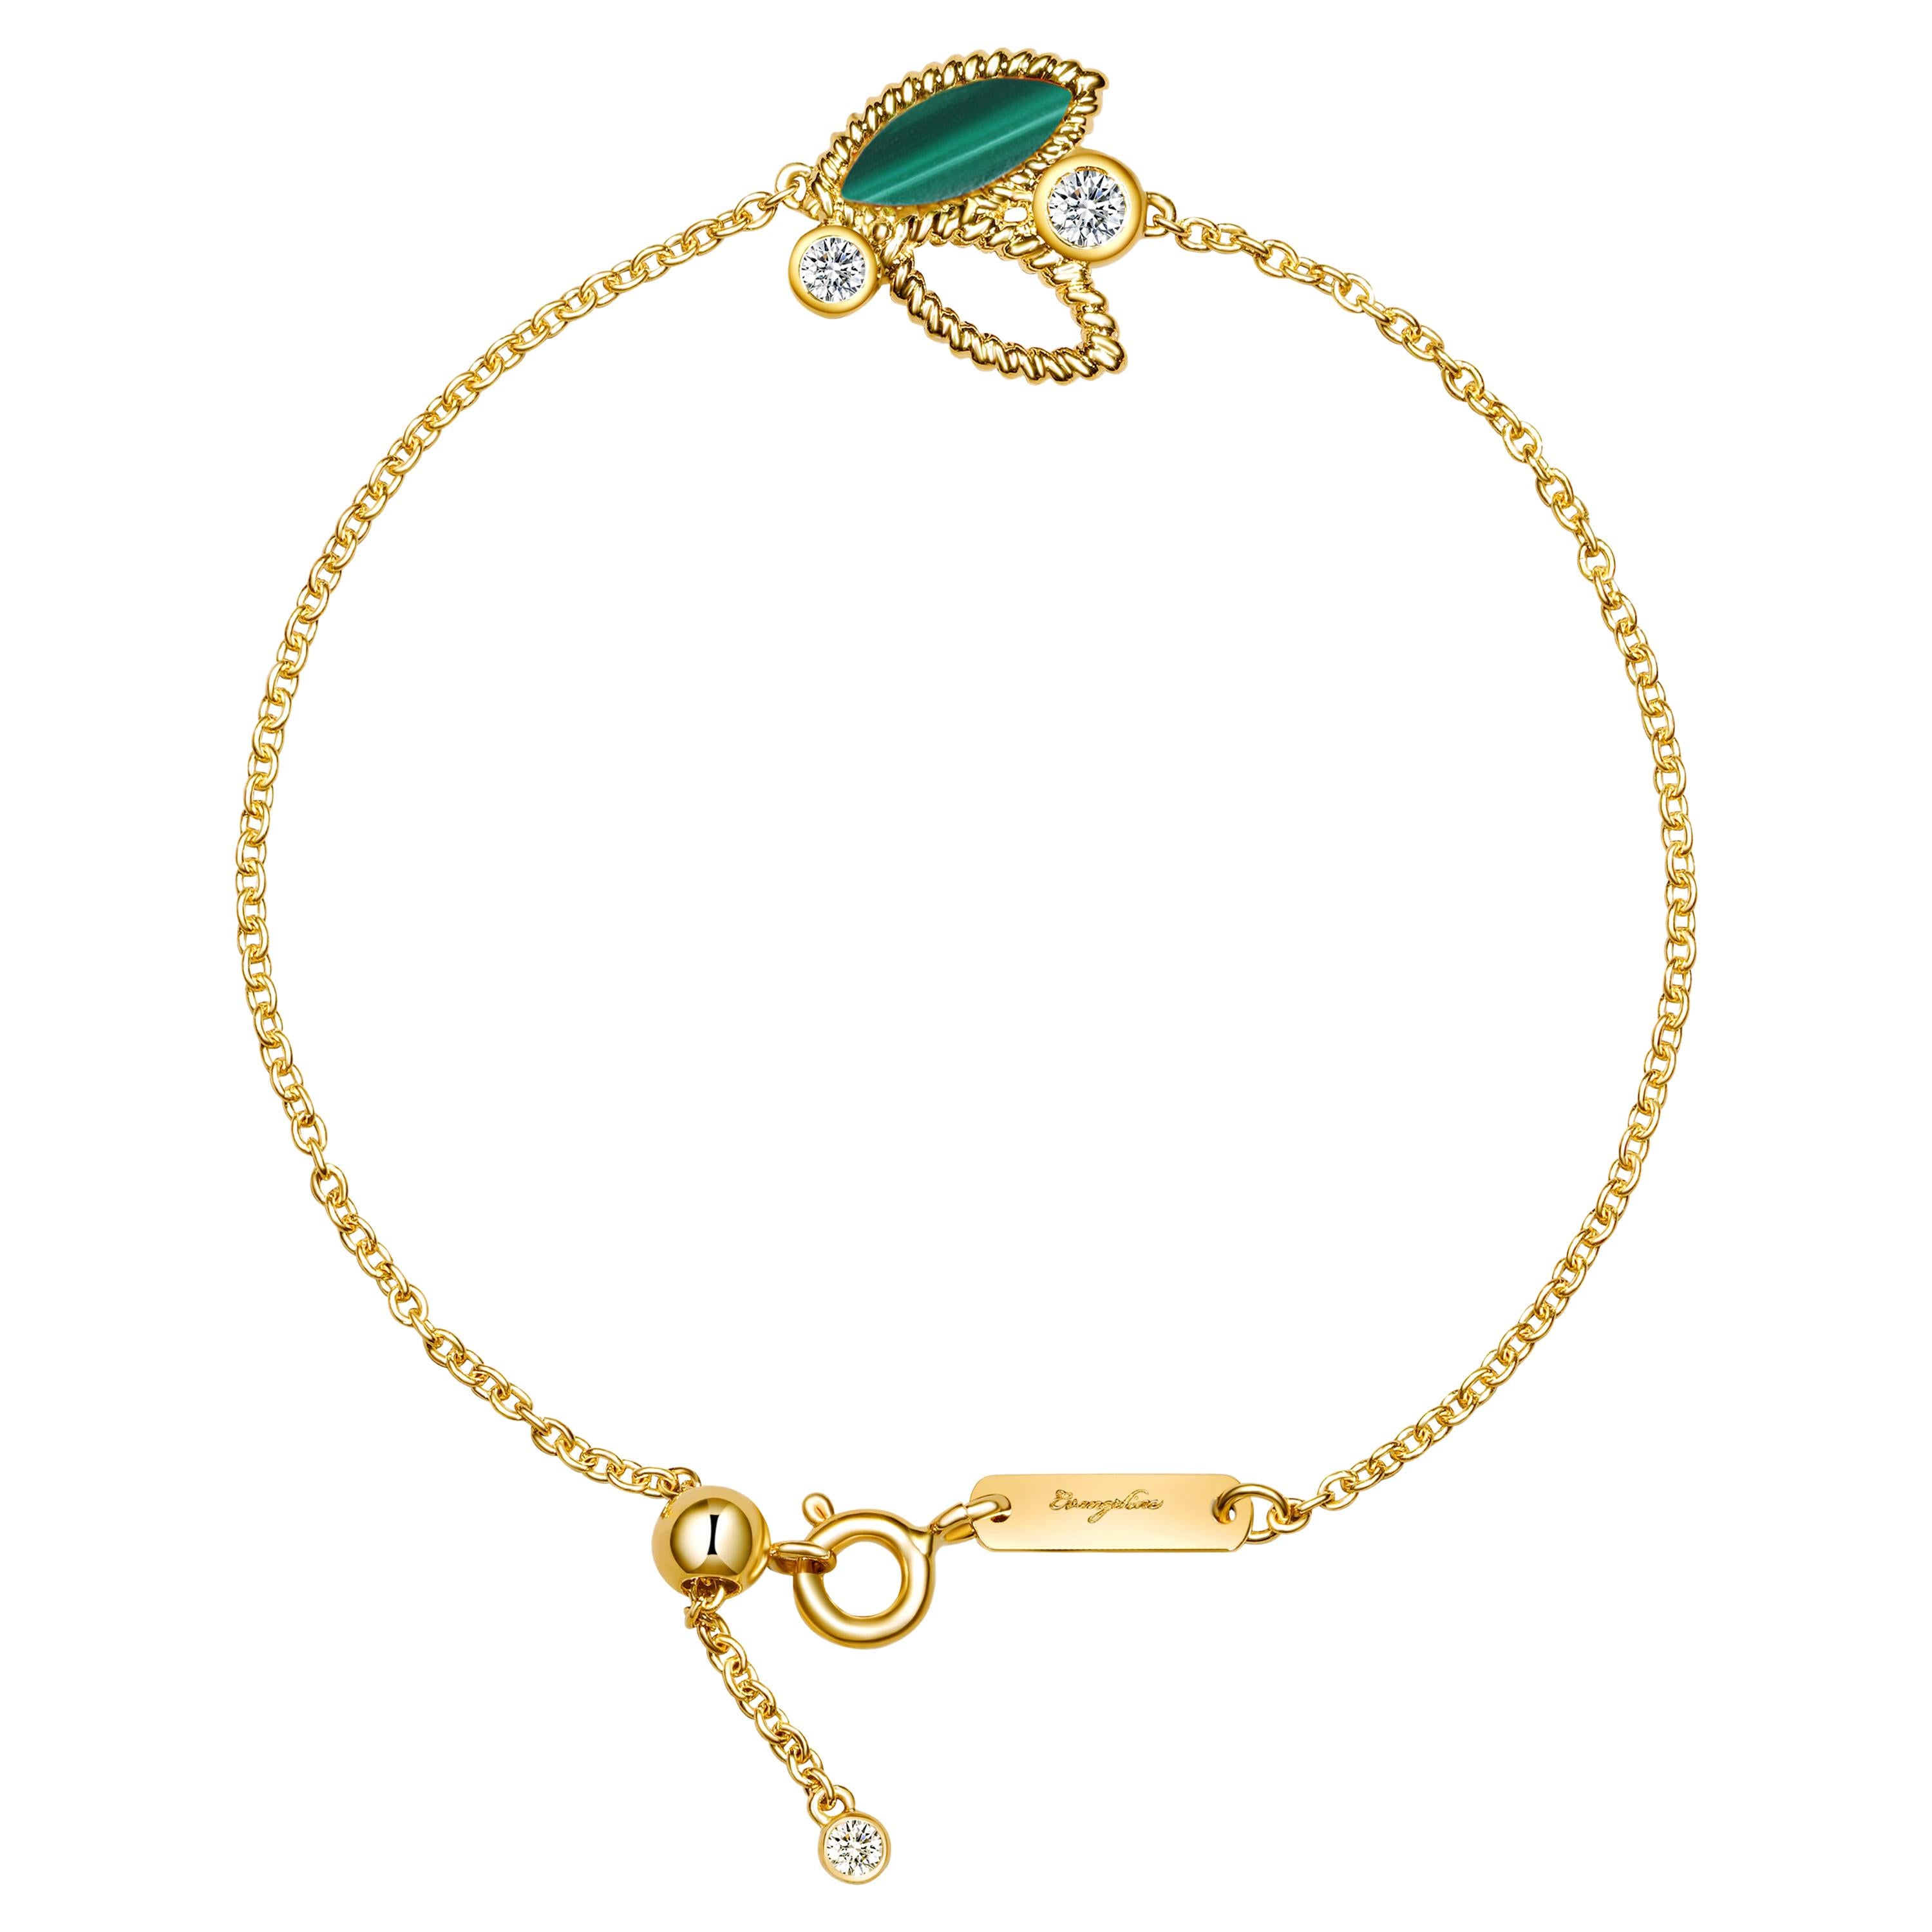 18 Karat Yellow Gold Mini Q Garden Bracelet with Diamonds and Green Malachite